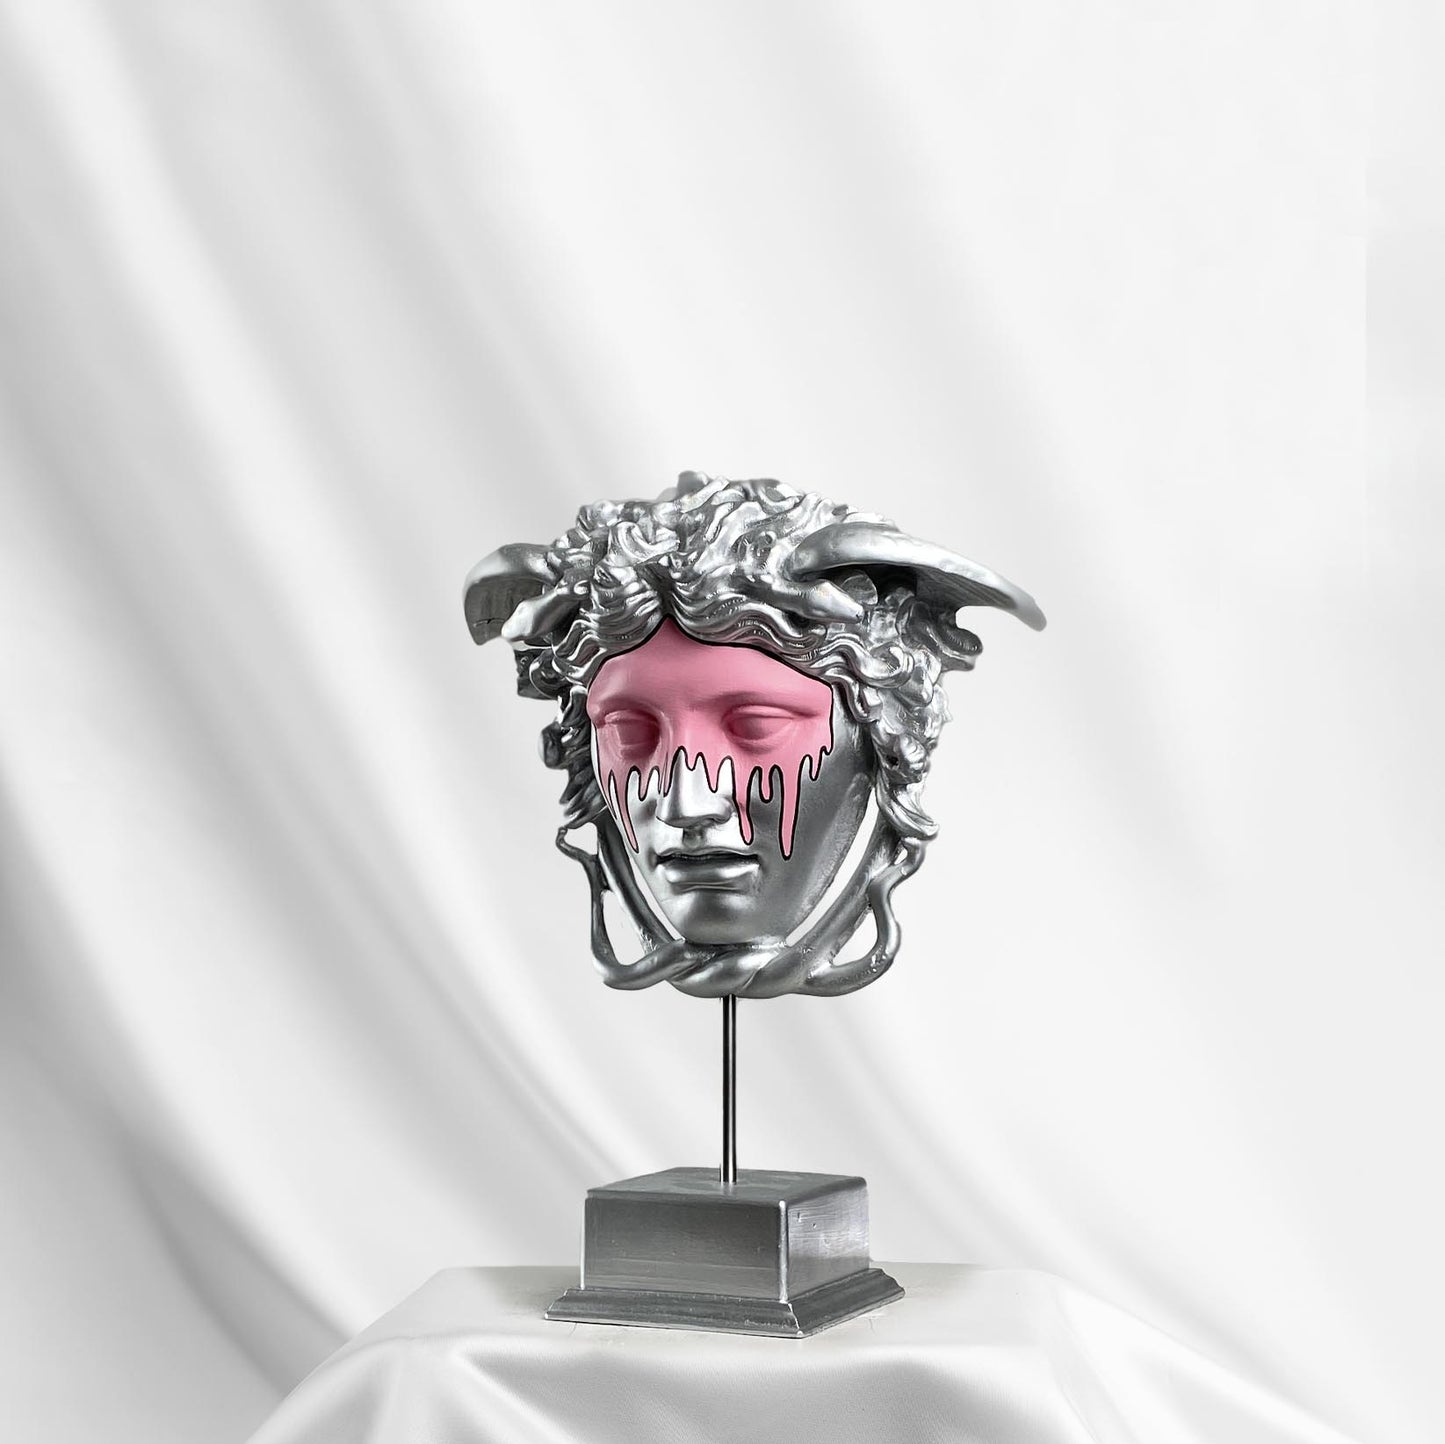 Medusa 'Pinking' Pop Art Sculpture, Modern Home Decor